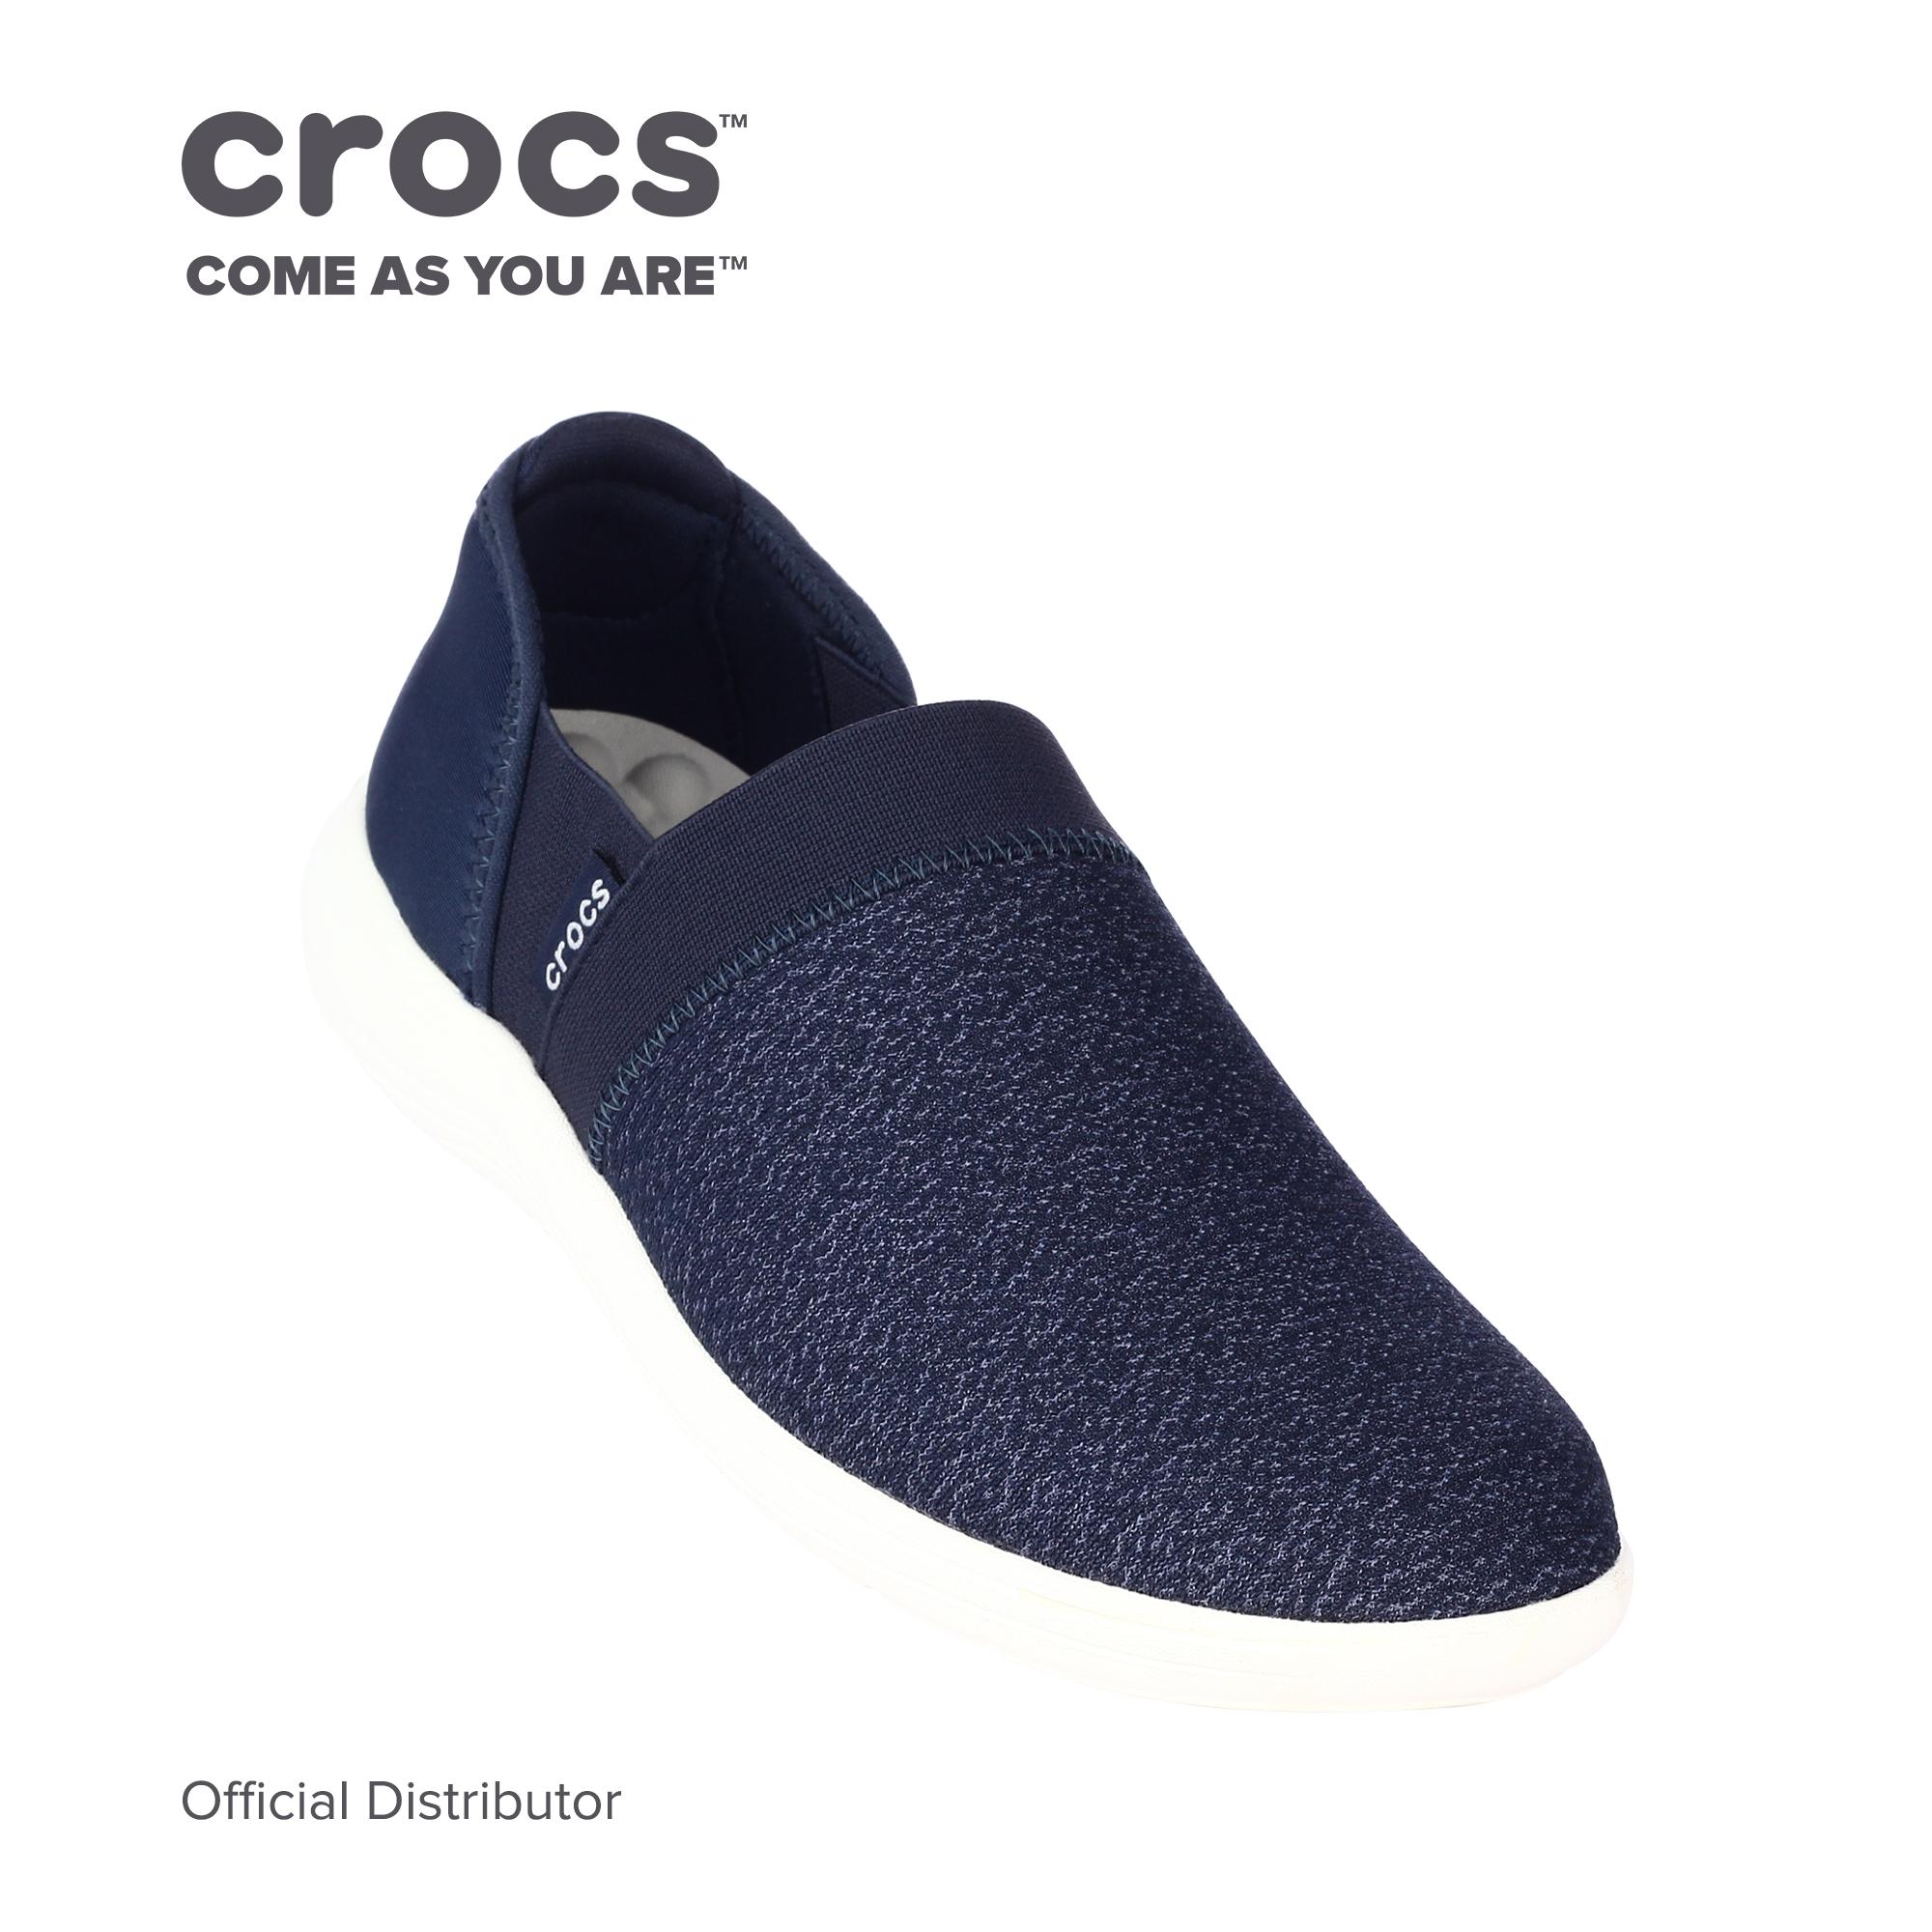 Crocs Men's Reviva™ Slip-on: Buy sell 